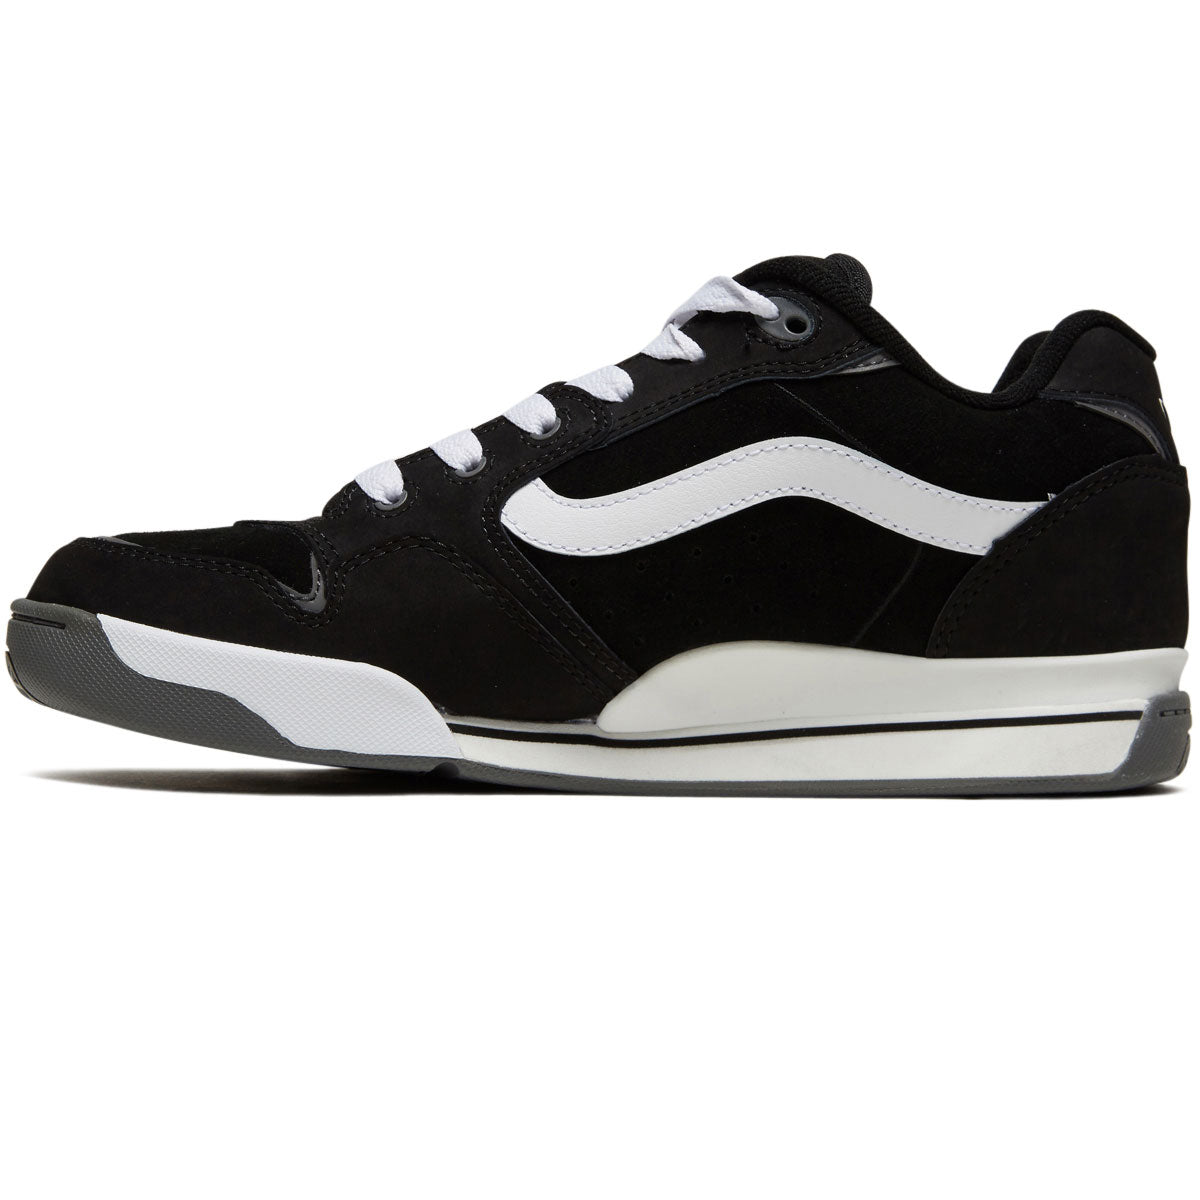 Vans Rowley XLT Shoes - Black/White image 2